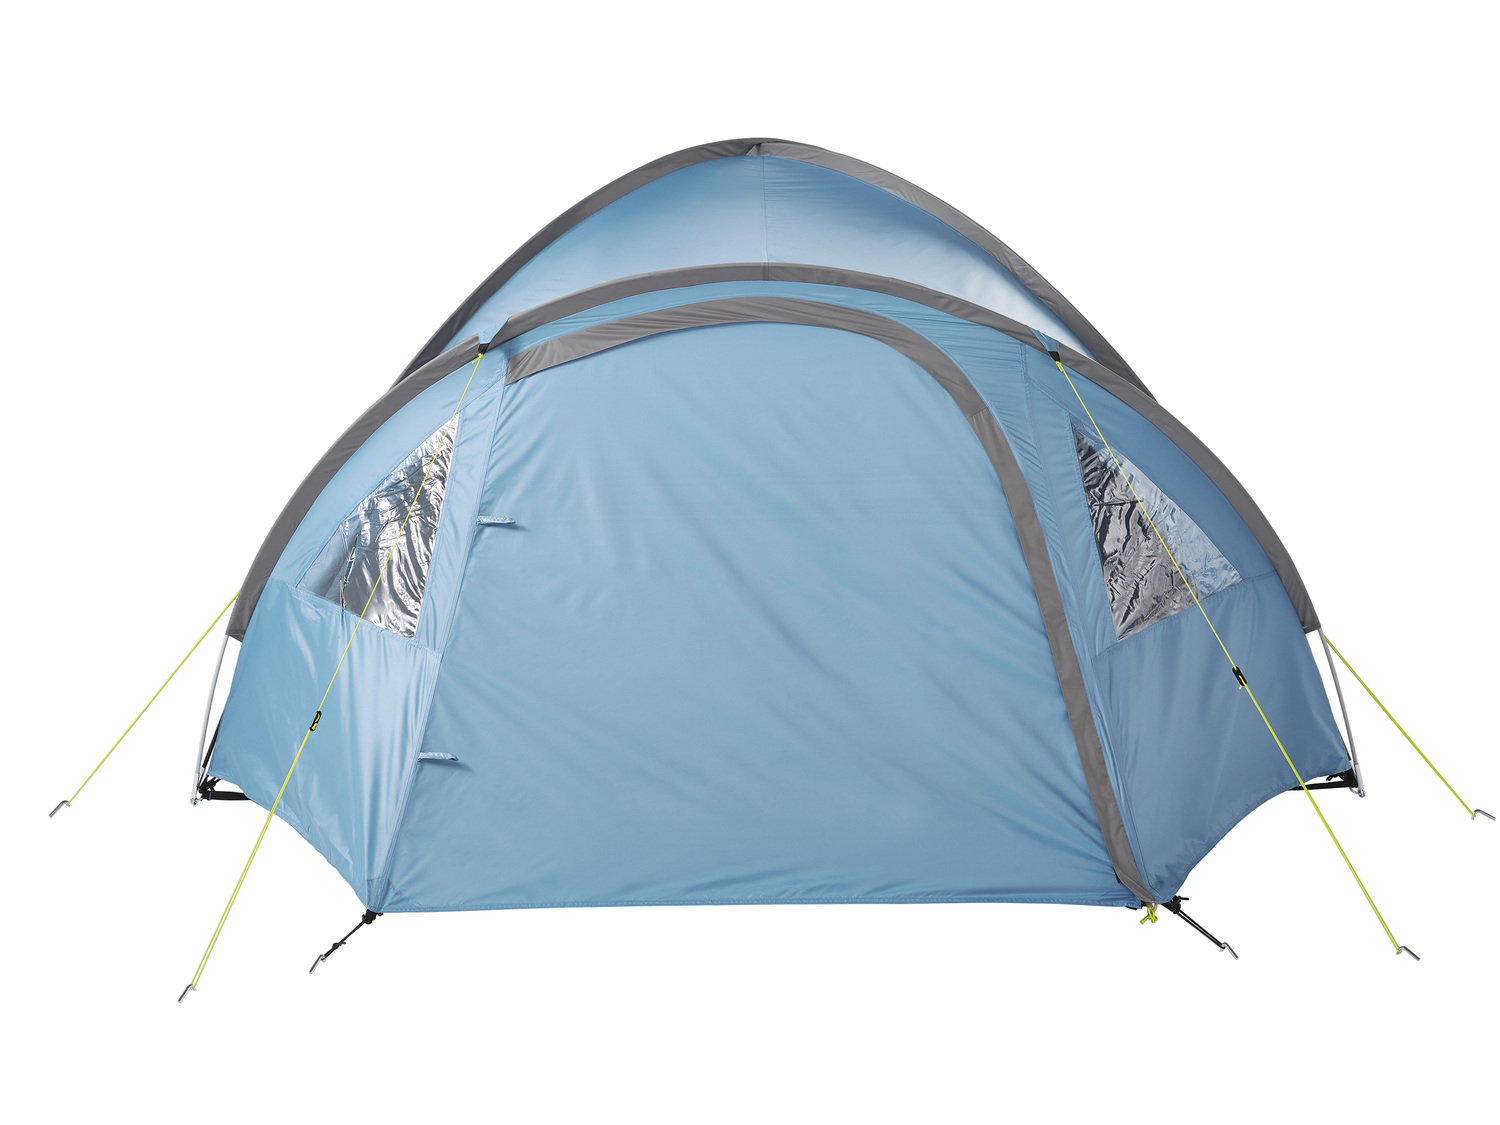 4-osobowy namiot igloo z podwójnym dachem Crivit, cena 229,00 PLN 
- namiot zewnętrzny: ...